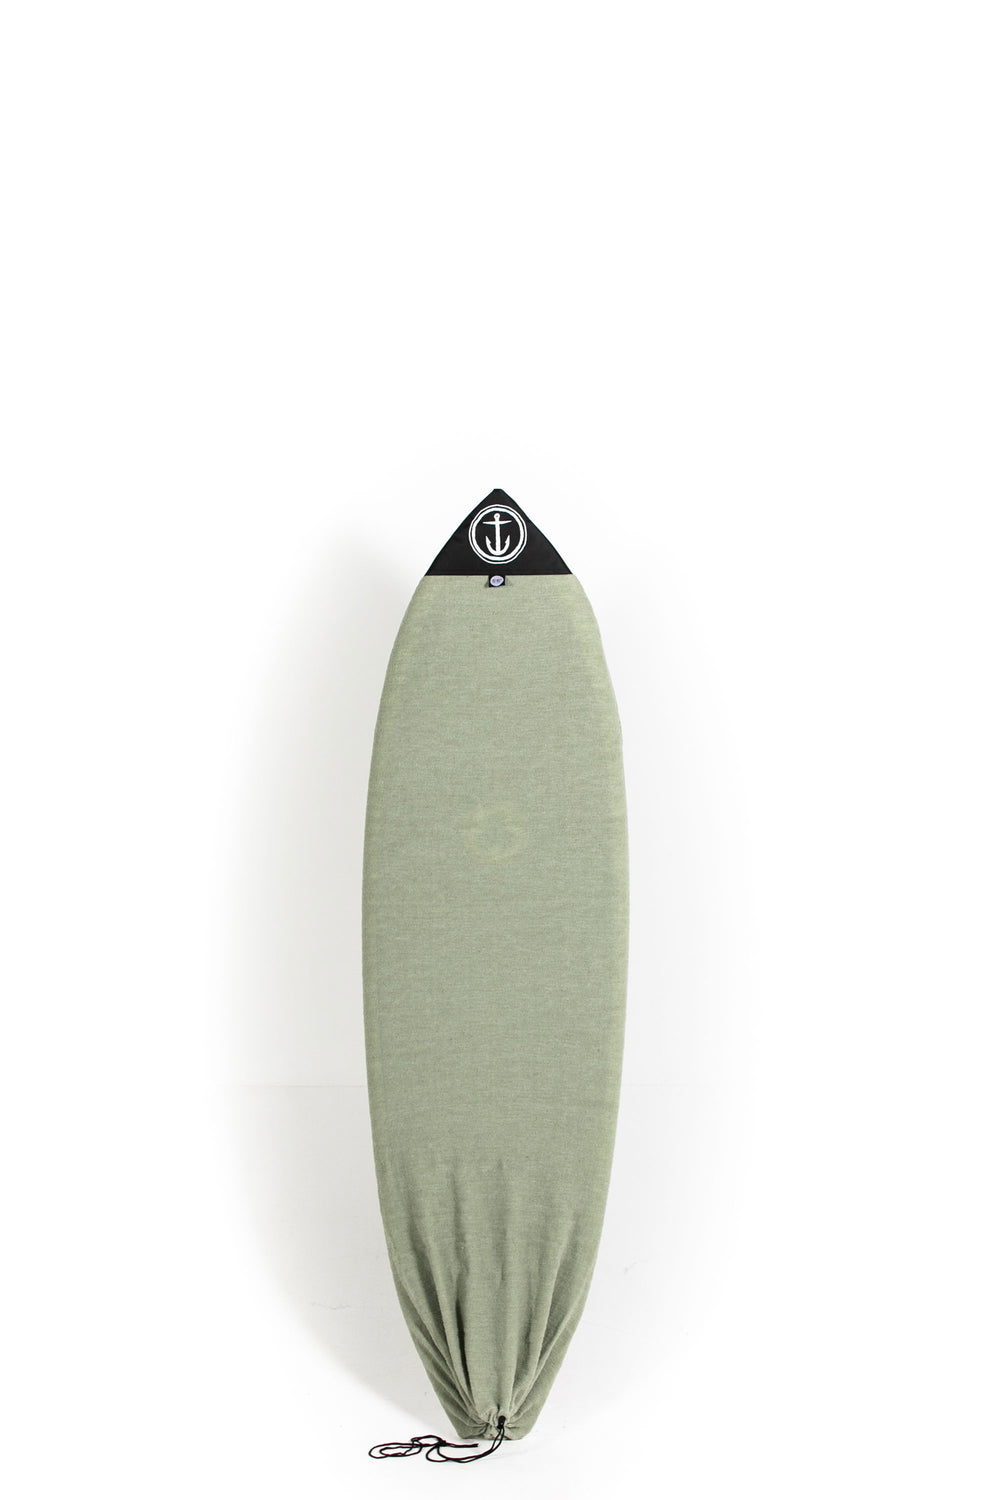 pukas-surf-shop-captain-fin-boardbag-sock-hybrid-lto-5-10